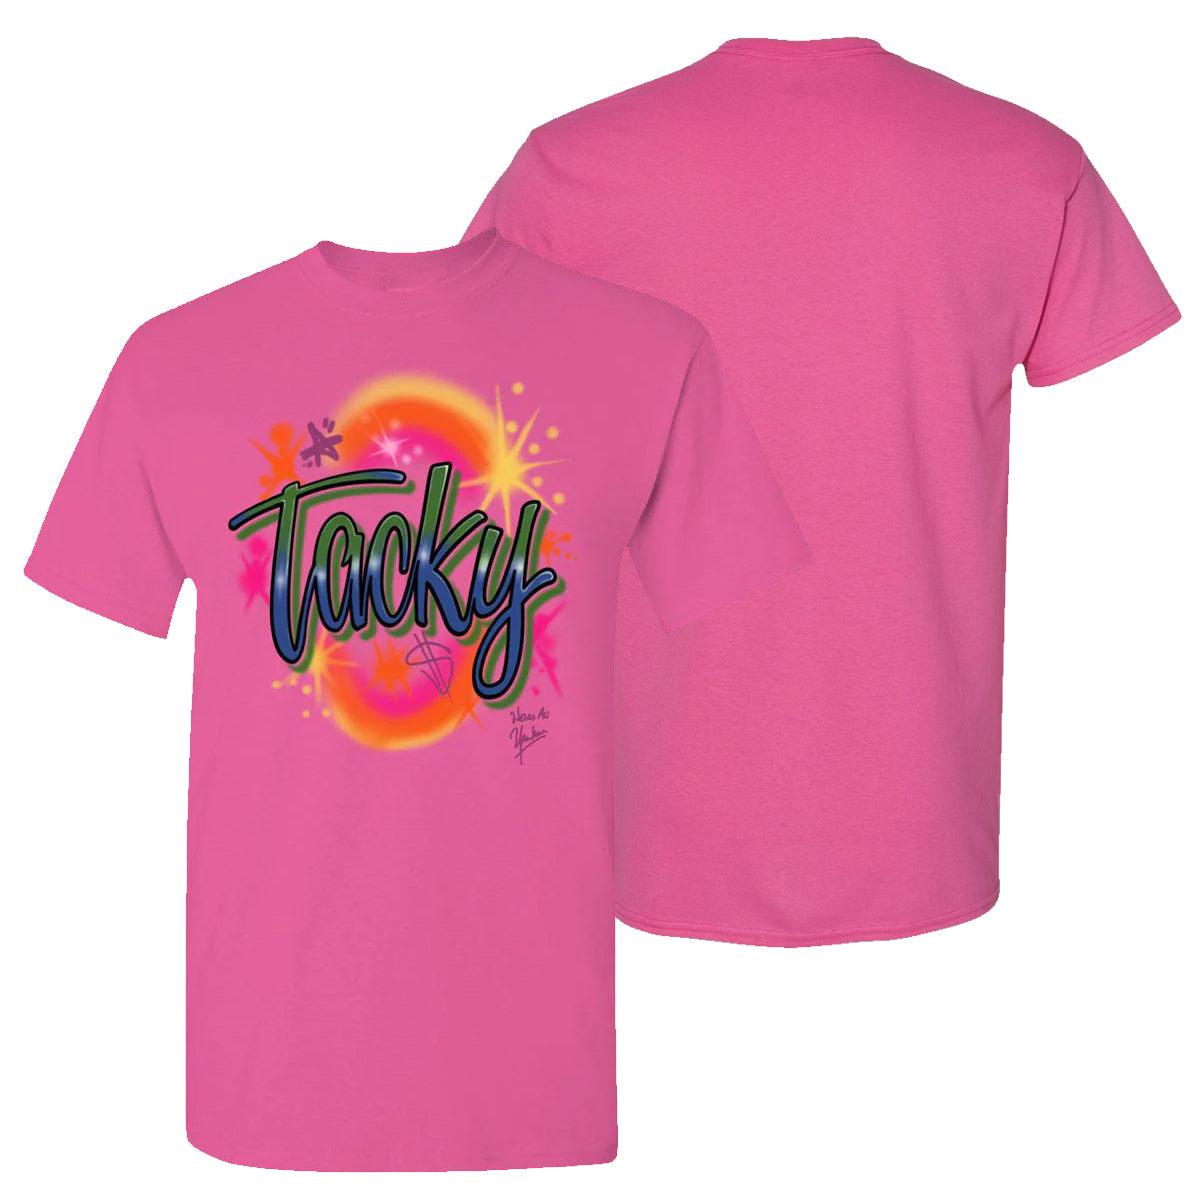 Tacky T-Shirt